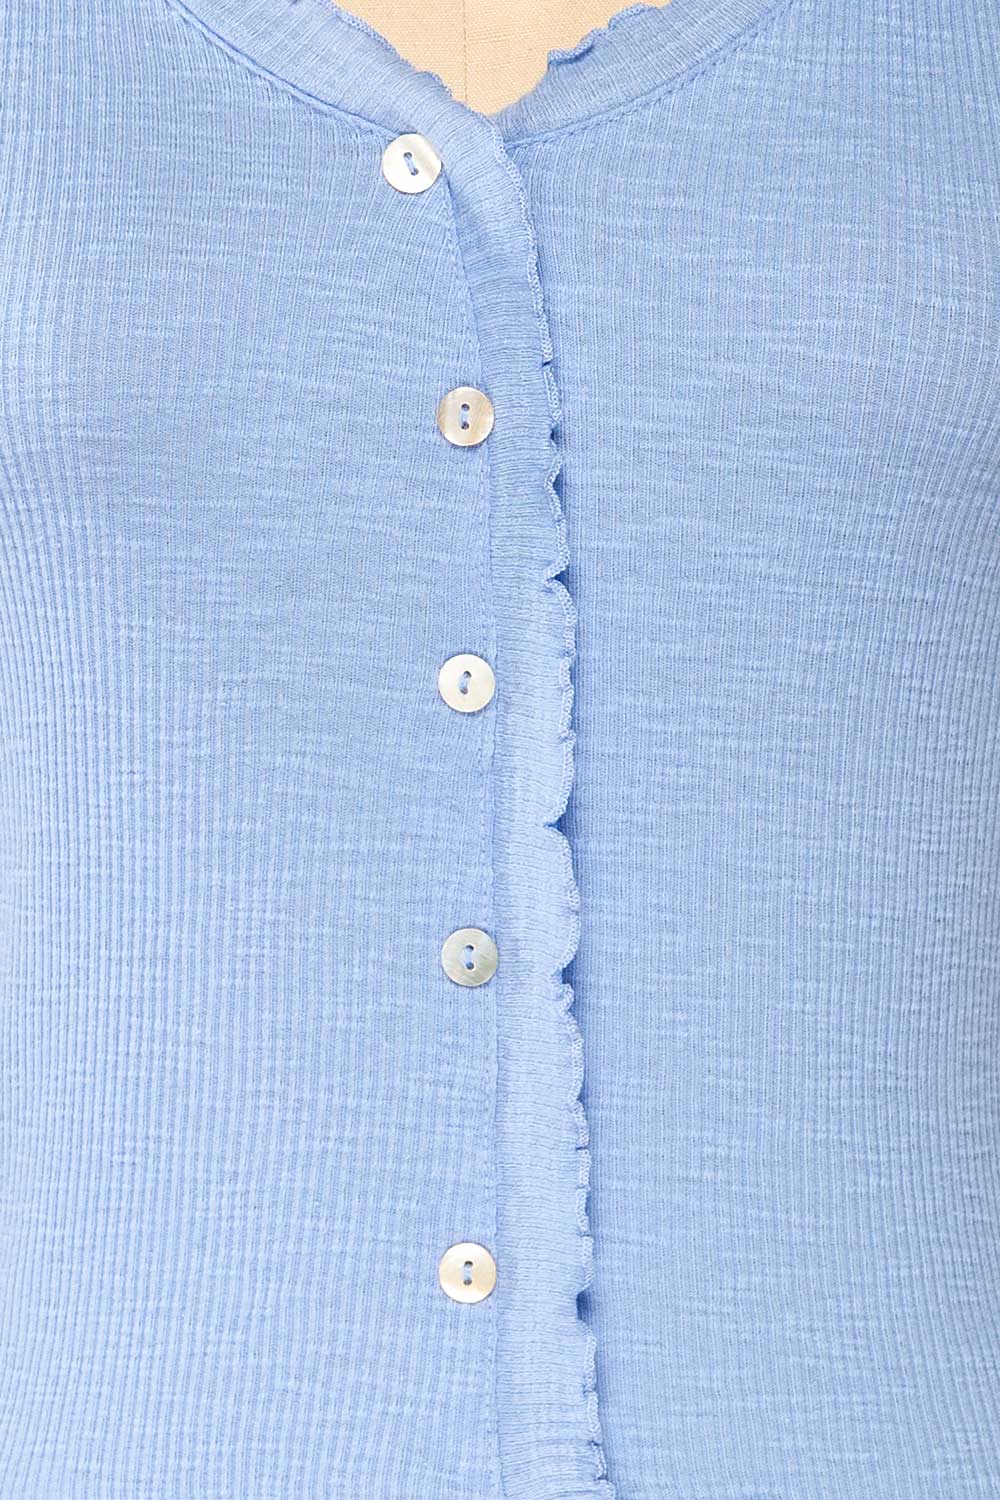 Pronoia Blue Ribbed Crop Top w/ Short Sleeves | La petite garçonne details